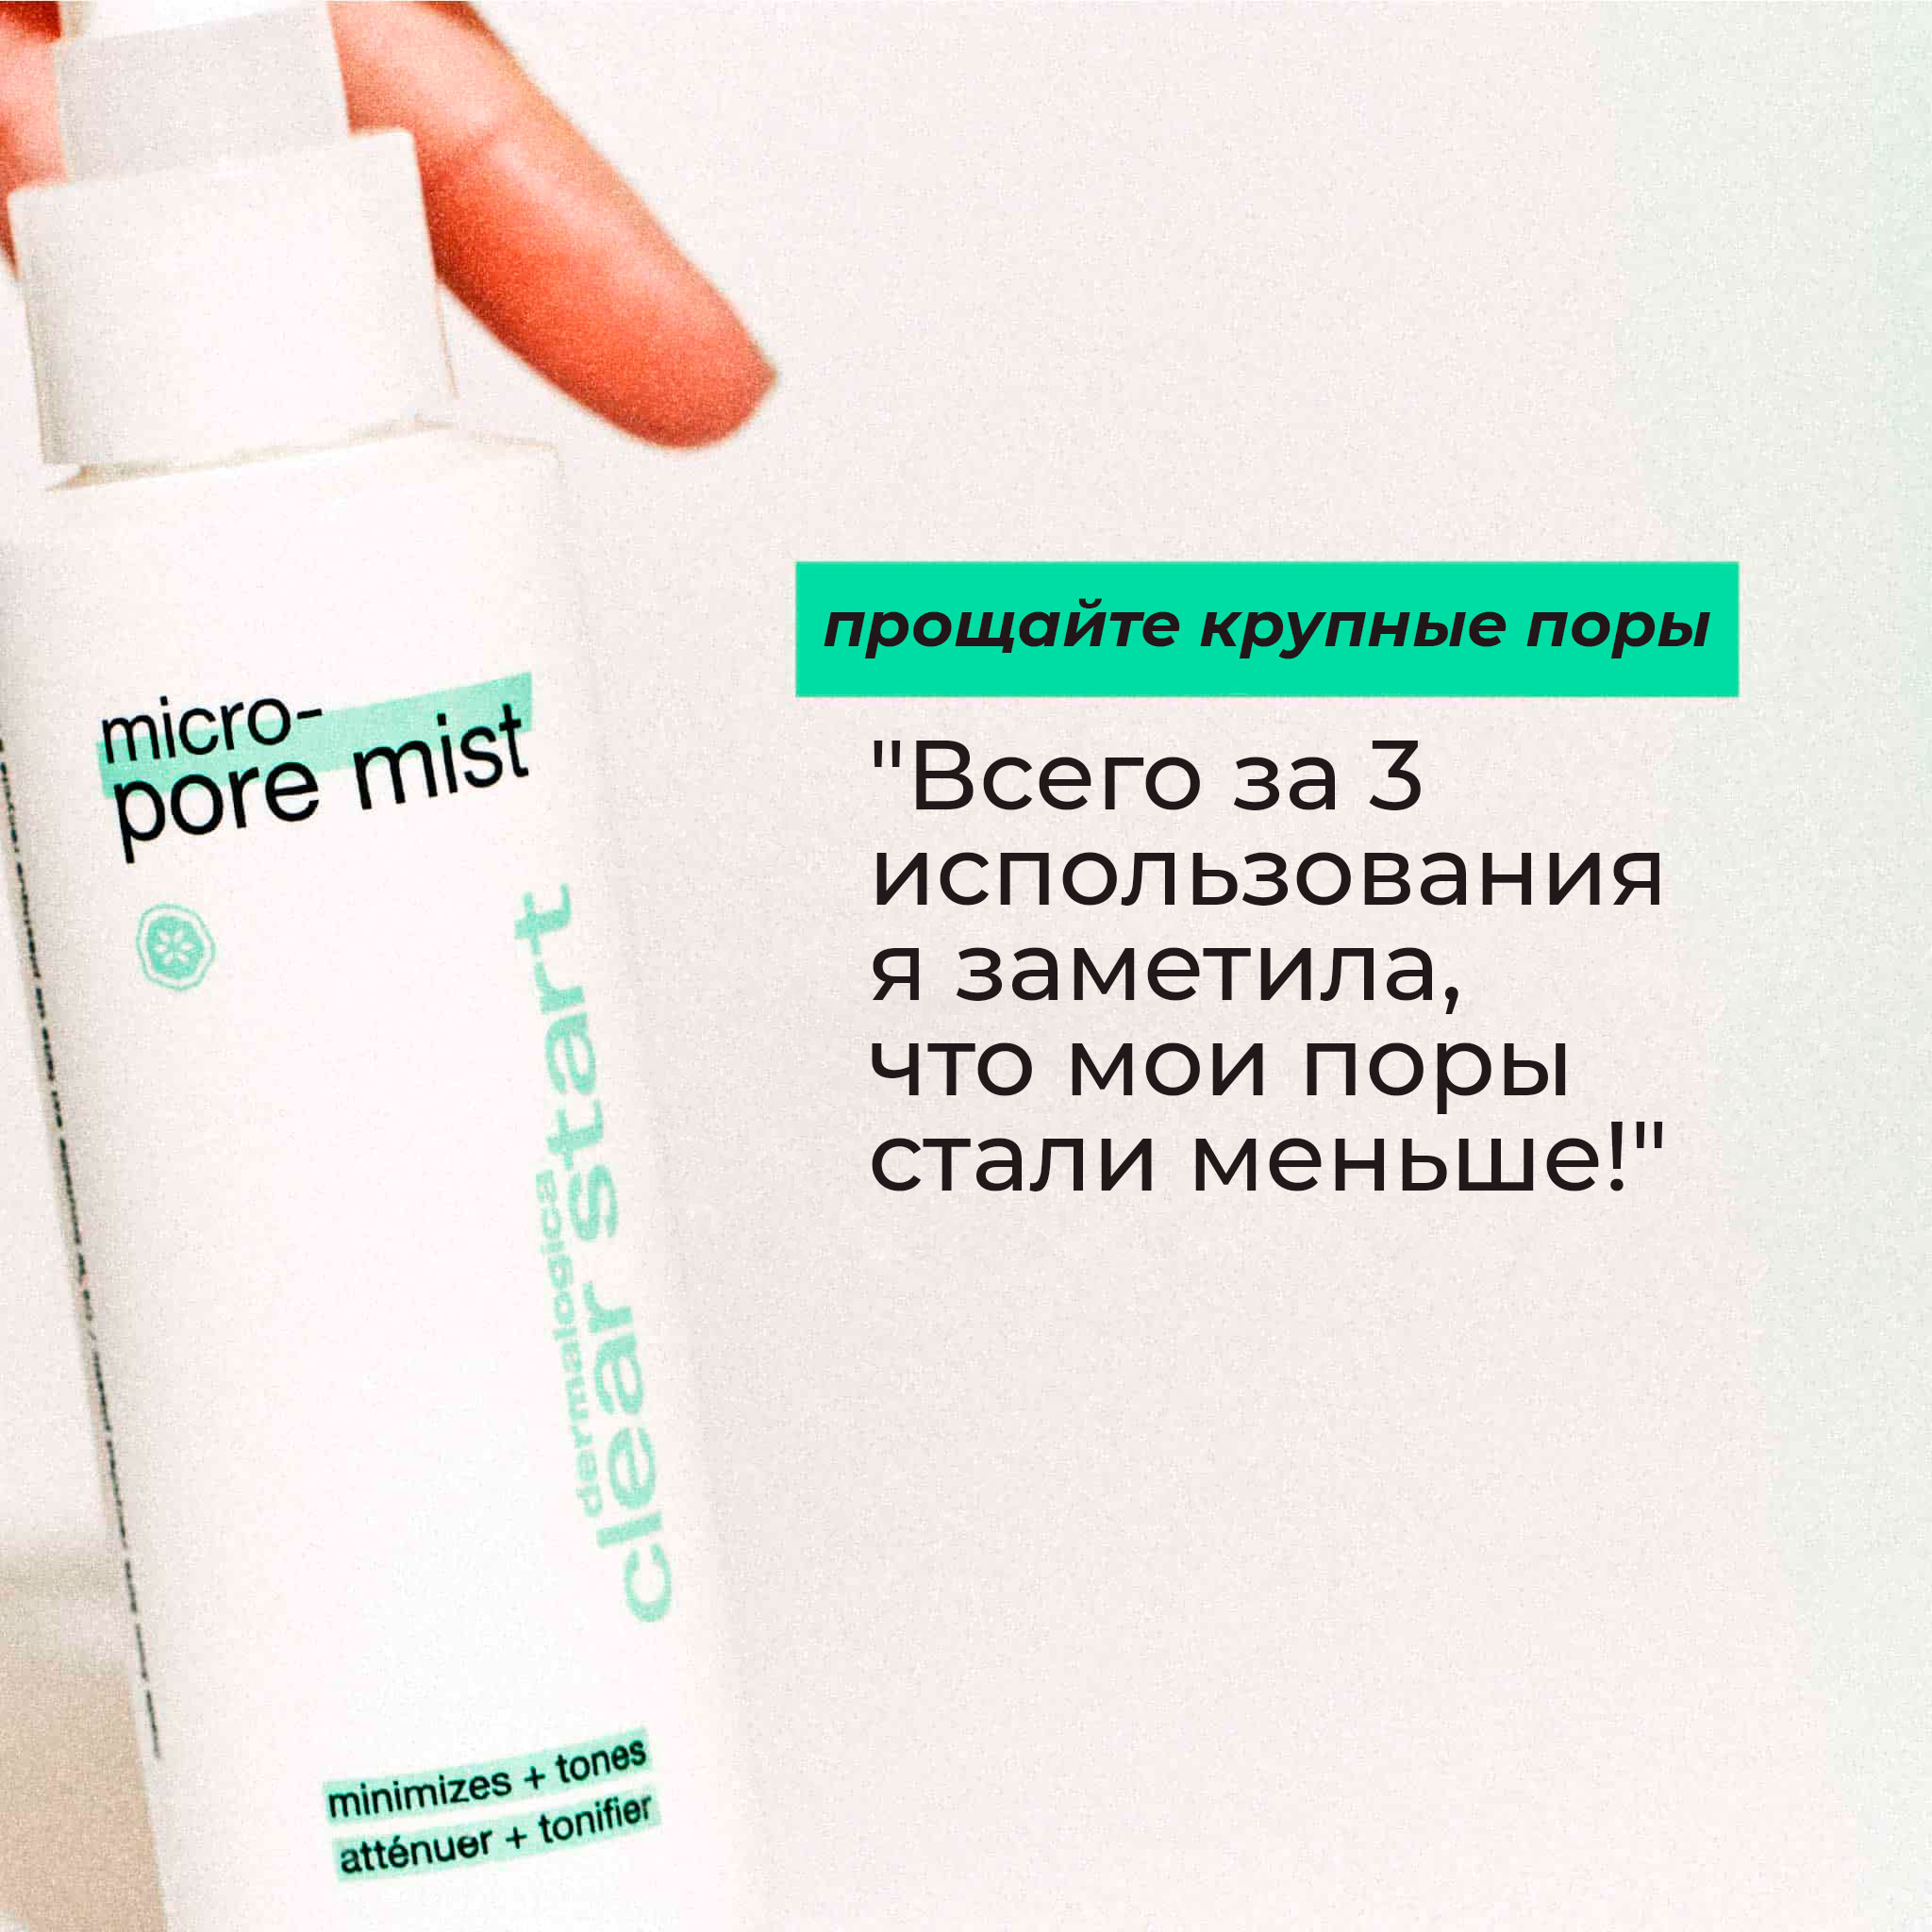 Micro-pore mist | Dermalogica®